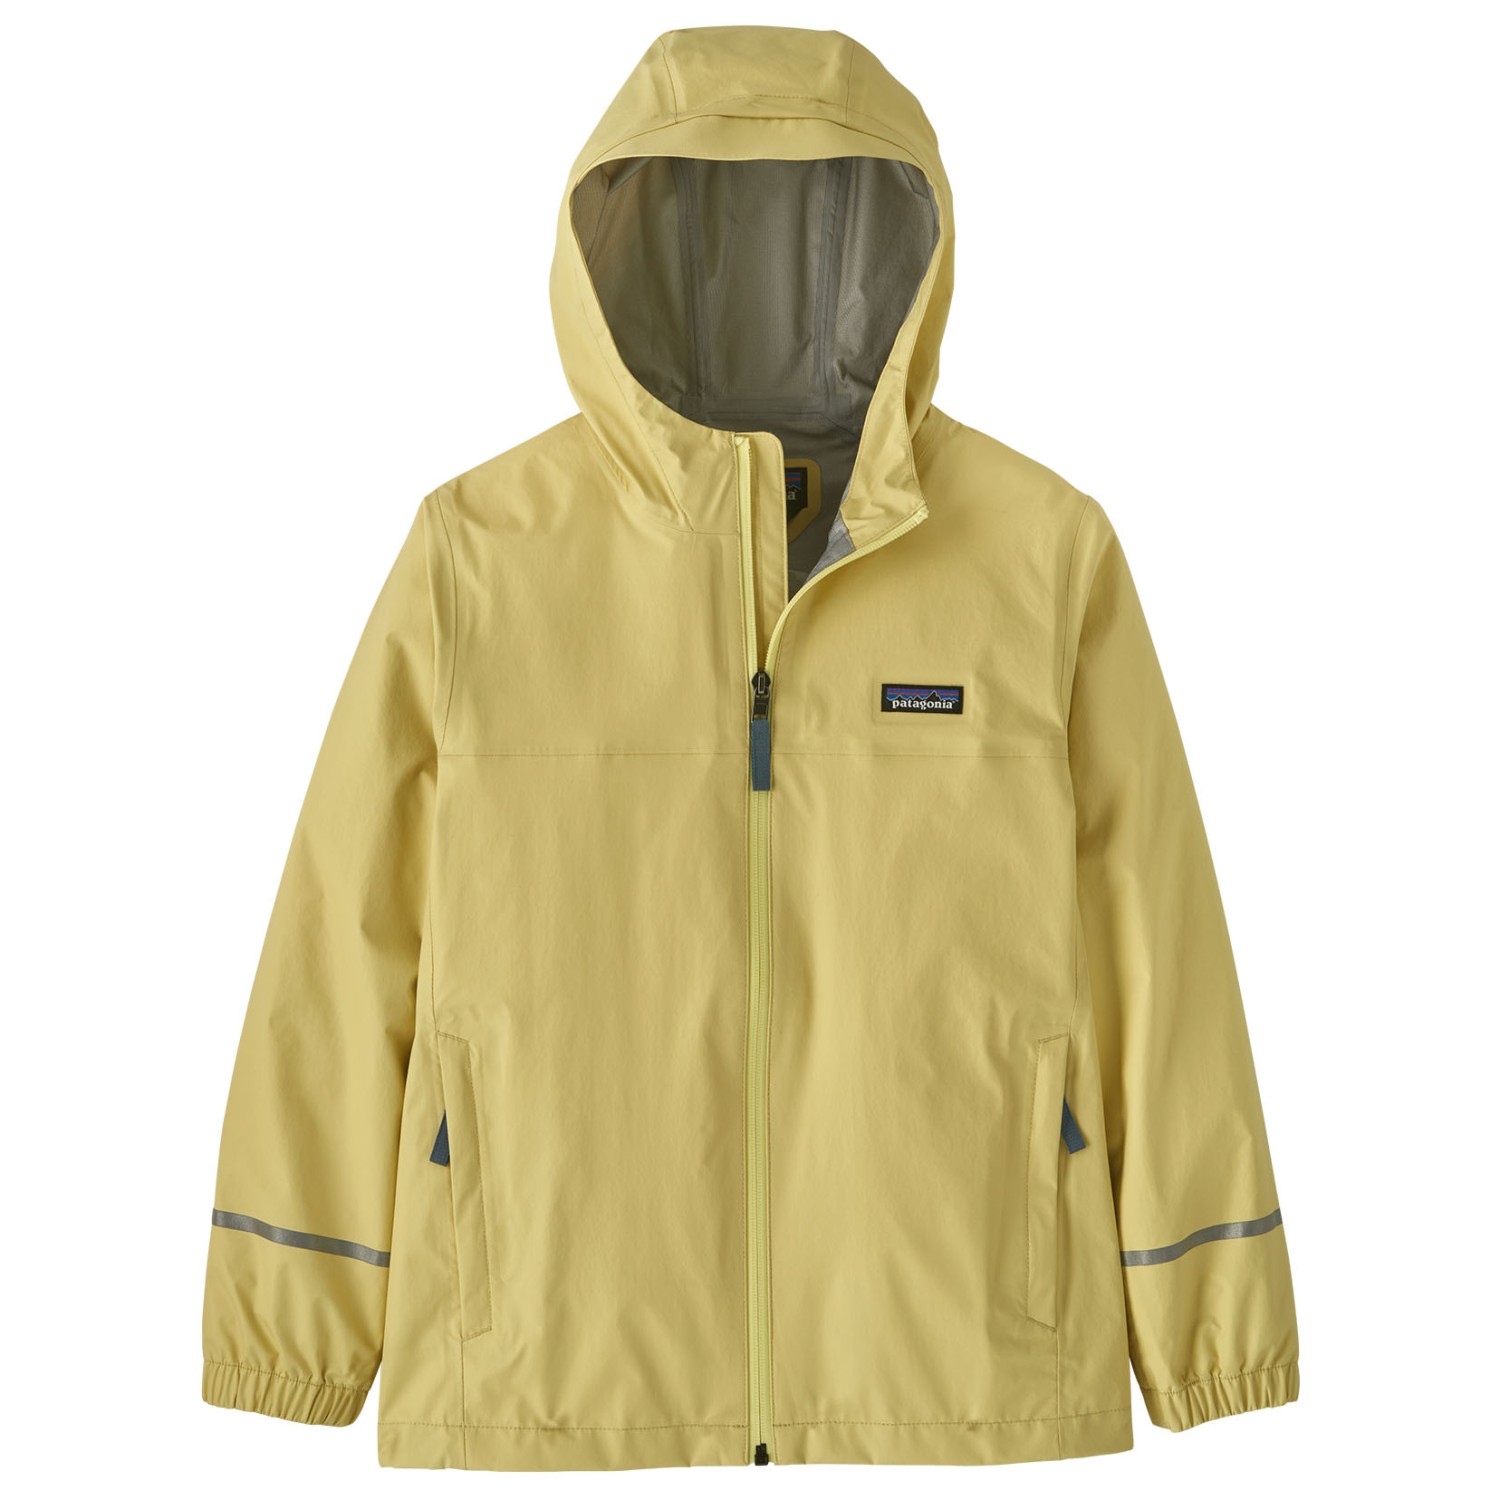 Дождевик Patagonia Kid's Torrentshell 3L, цвет Milled Yellow куртка patagonia men s torrentshell 3l jacket s